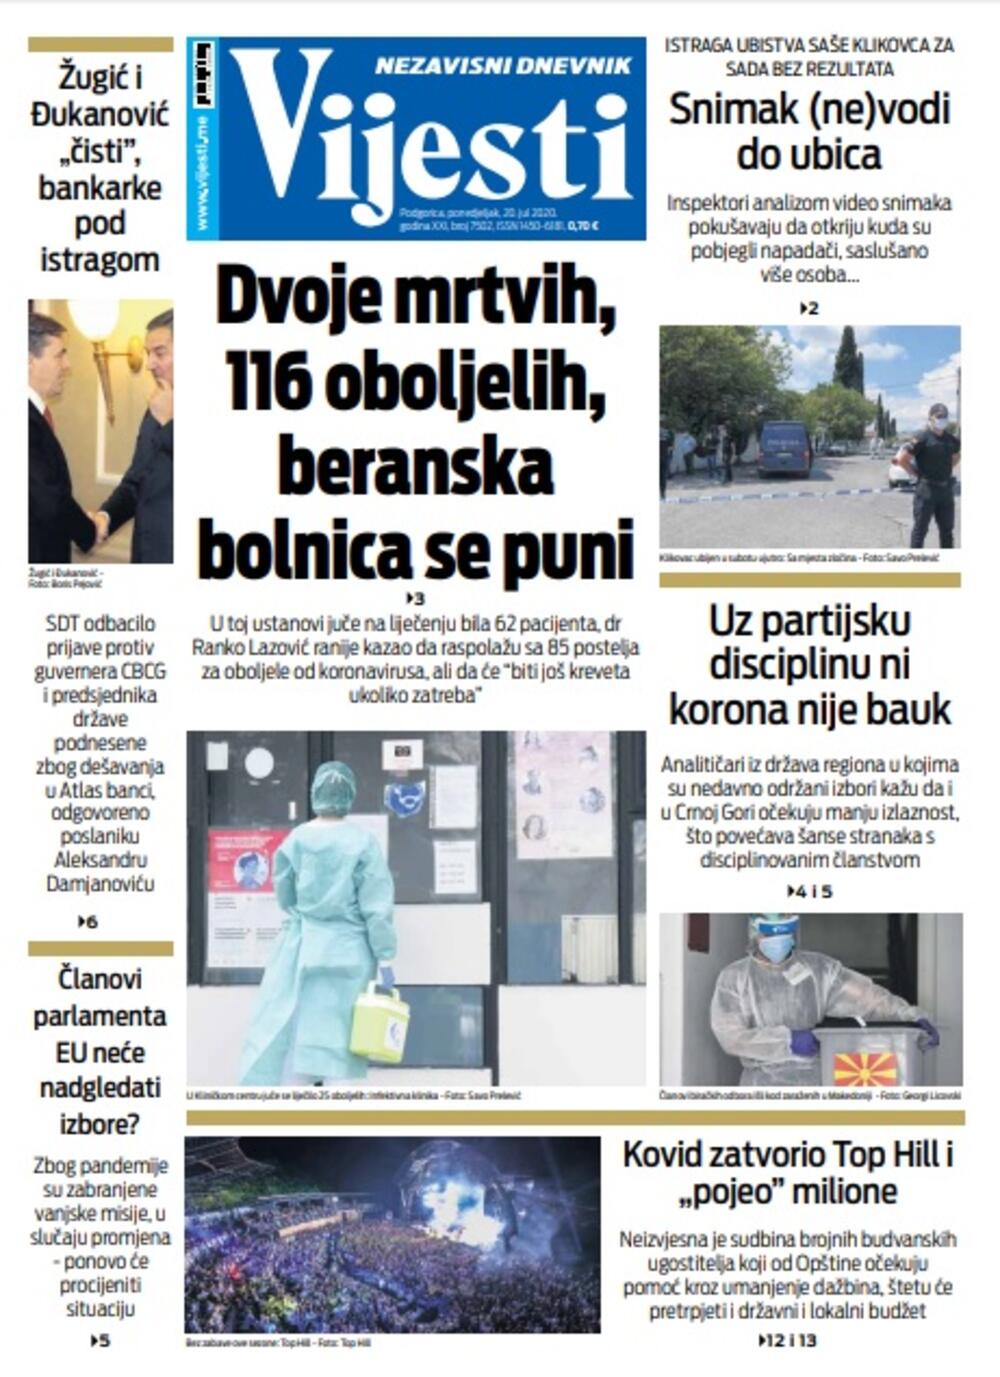 Naslovna strana "Vijesti" za 20. jul, Foto: Vijesti